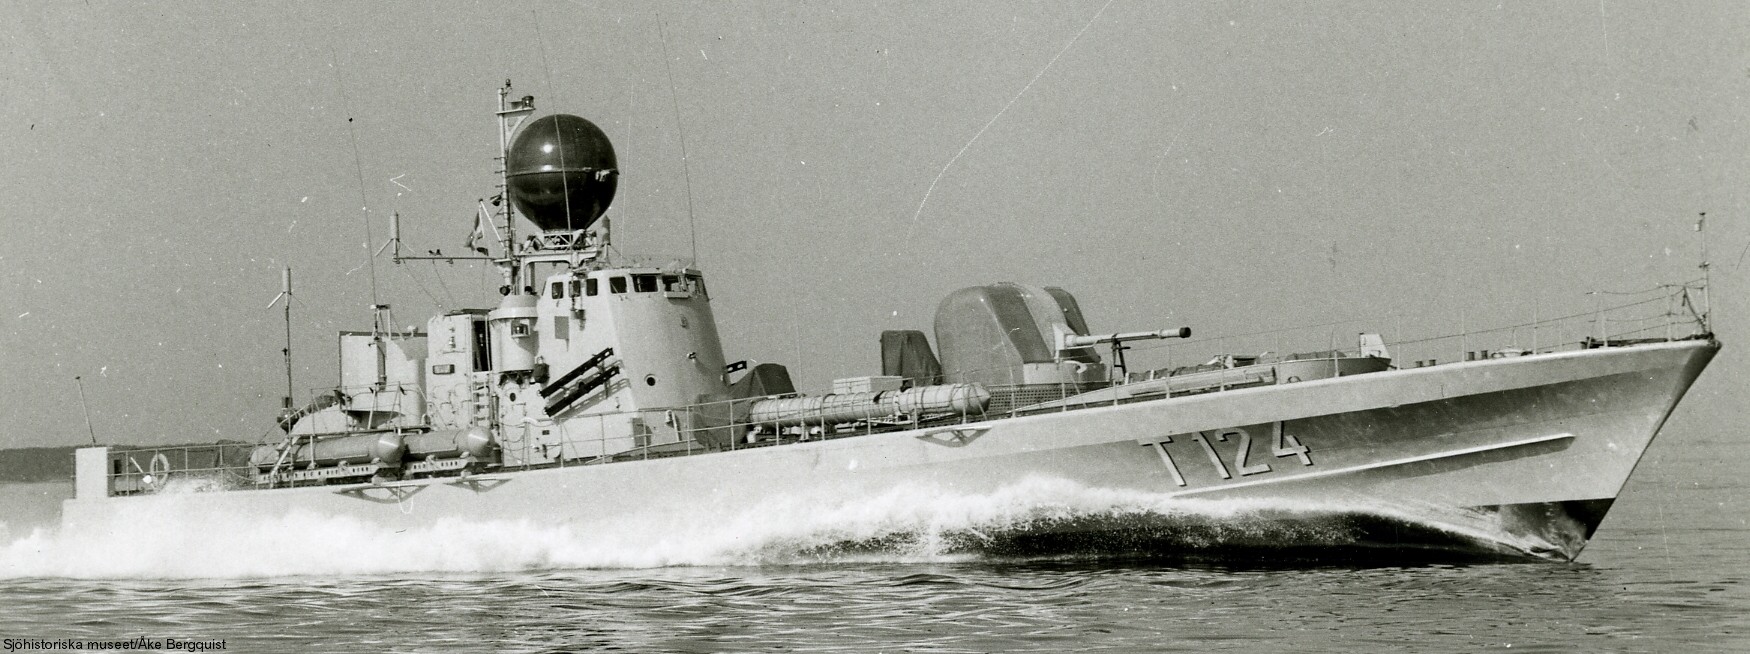 t124 castor hswms hms spica class fast attack craft torpedo boat vessel swedish navy svenska marinen 04